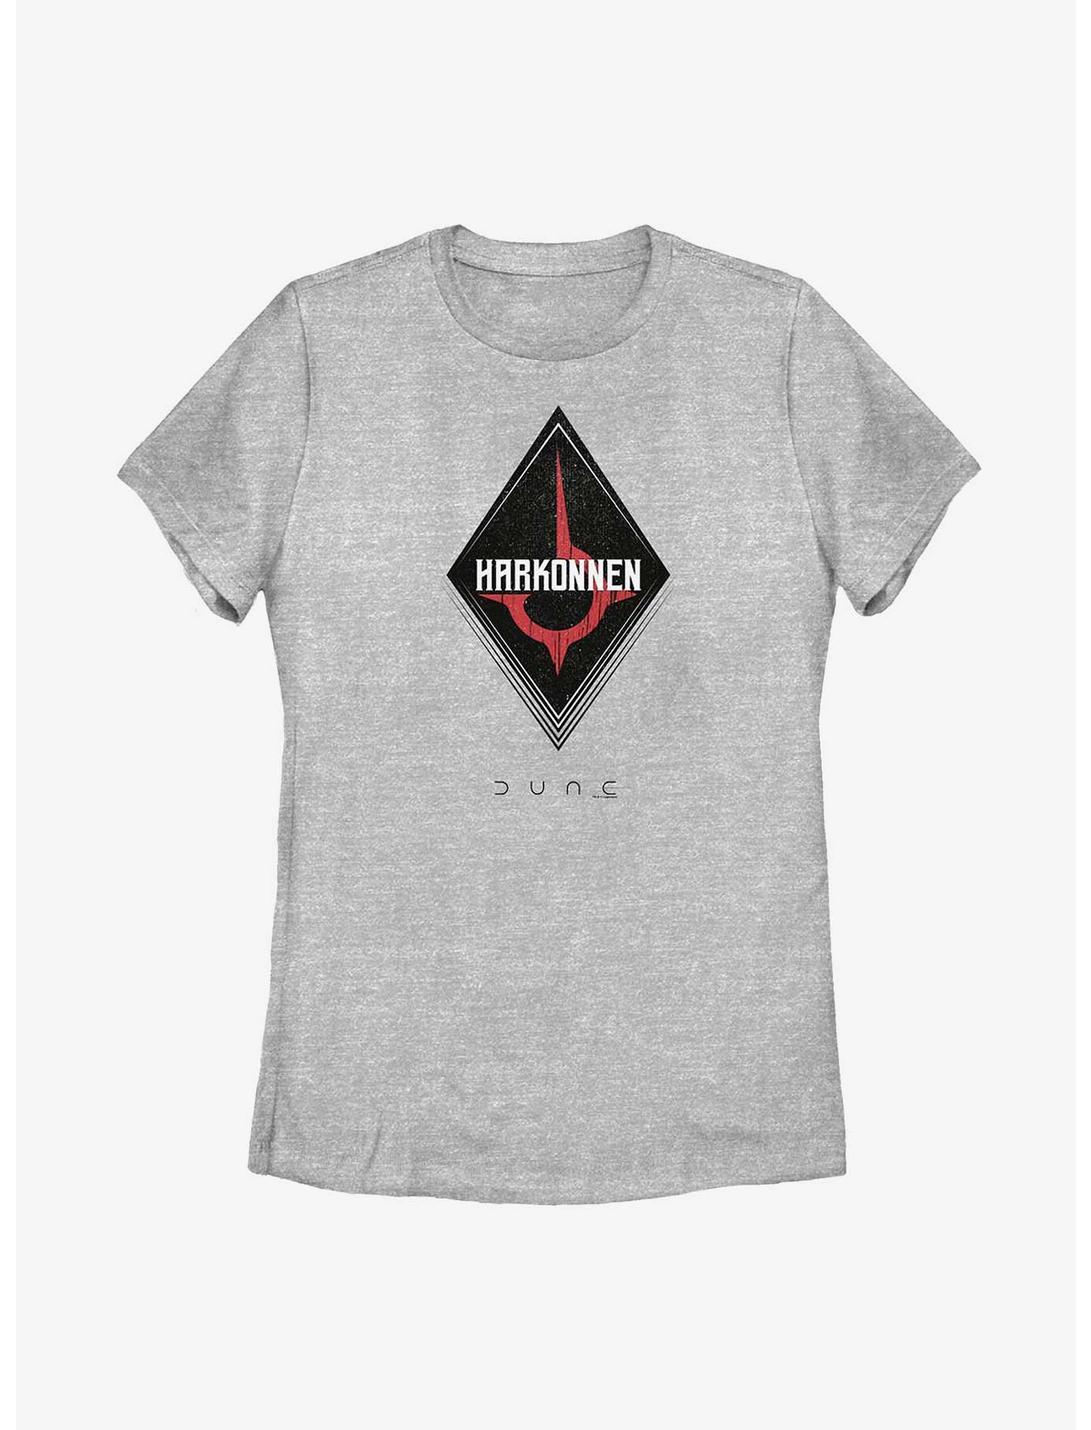 Dune Harkonnen Emblem Womens T-Shirt, ATH HTR, hi-res